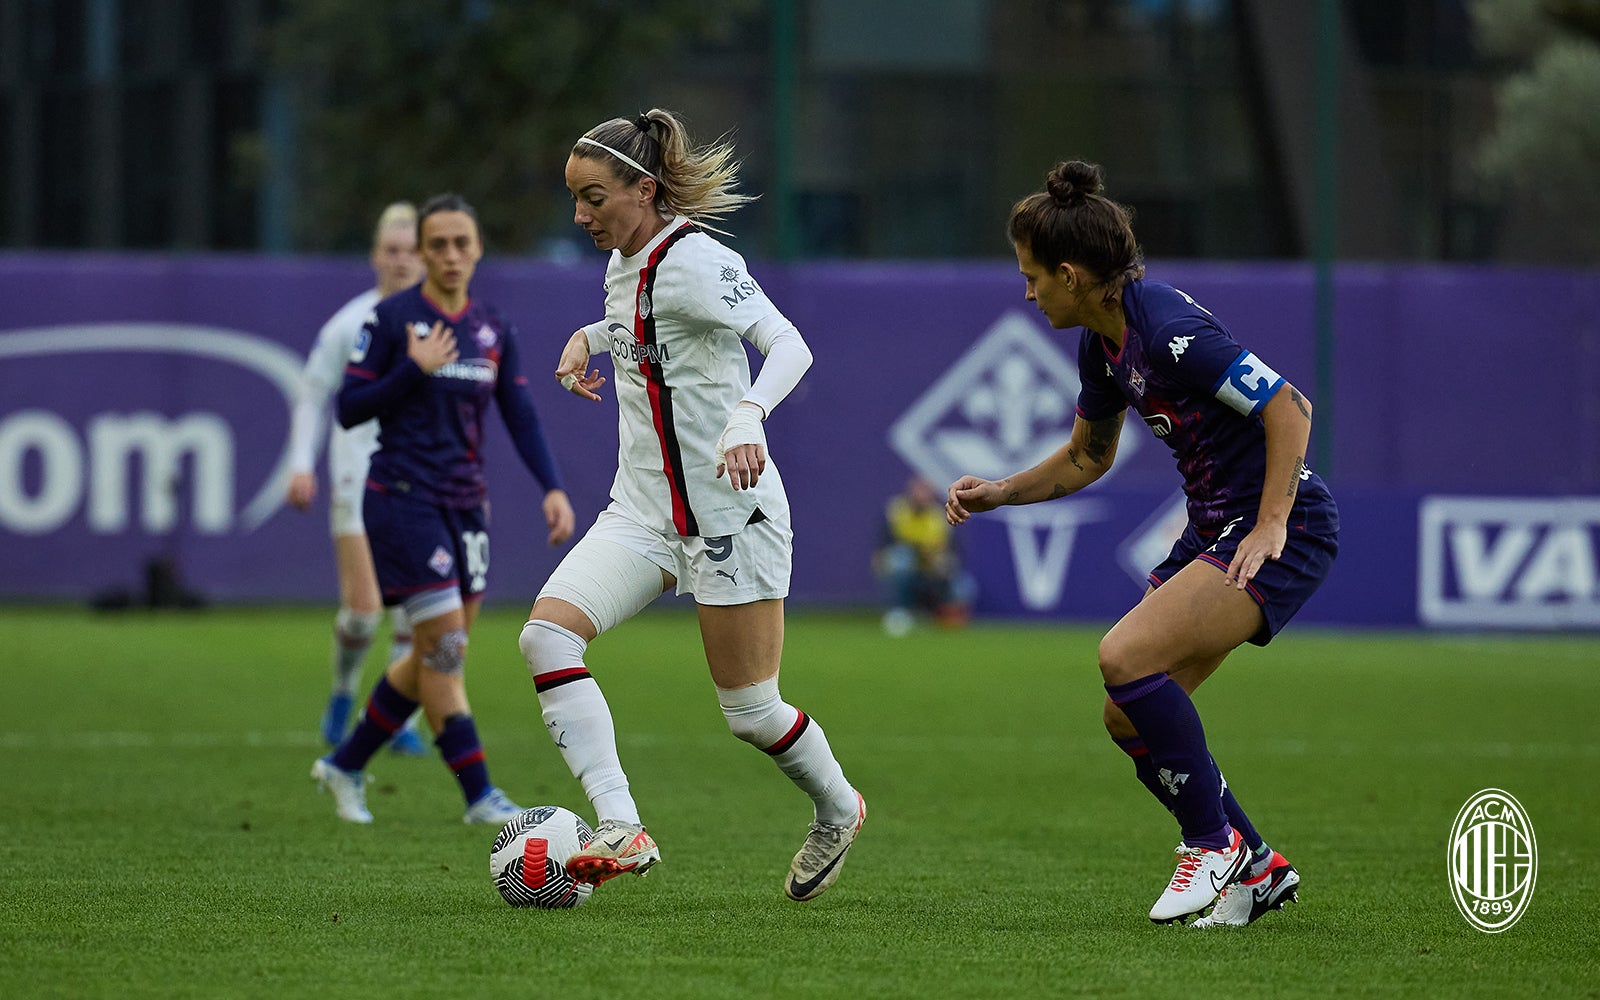 Serie A femminile. La Fiorentina batte il Milan in pieno recupero - Toscana